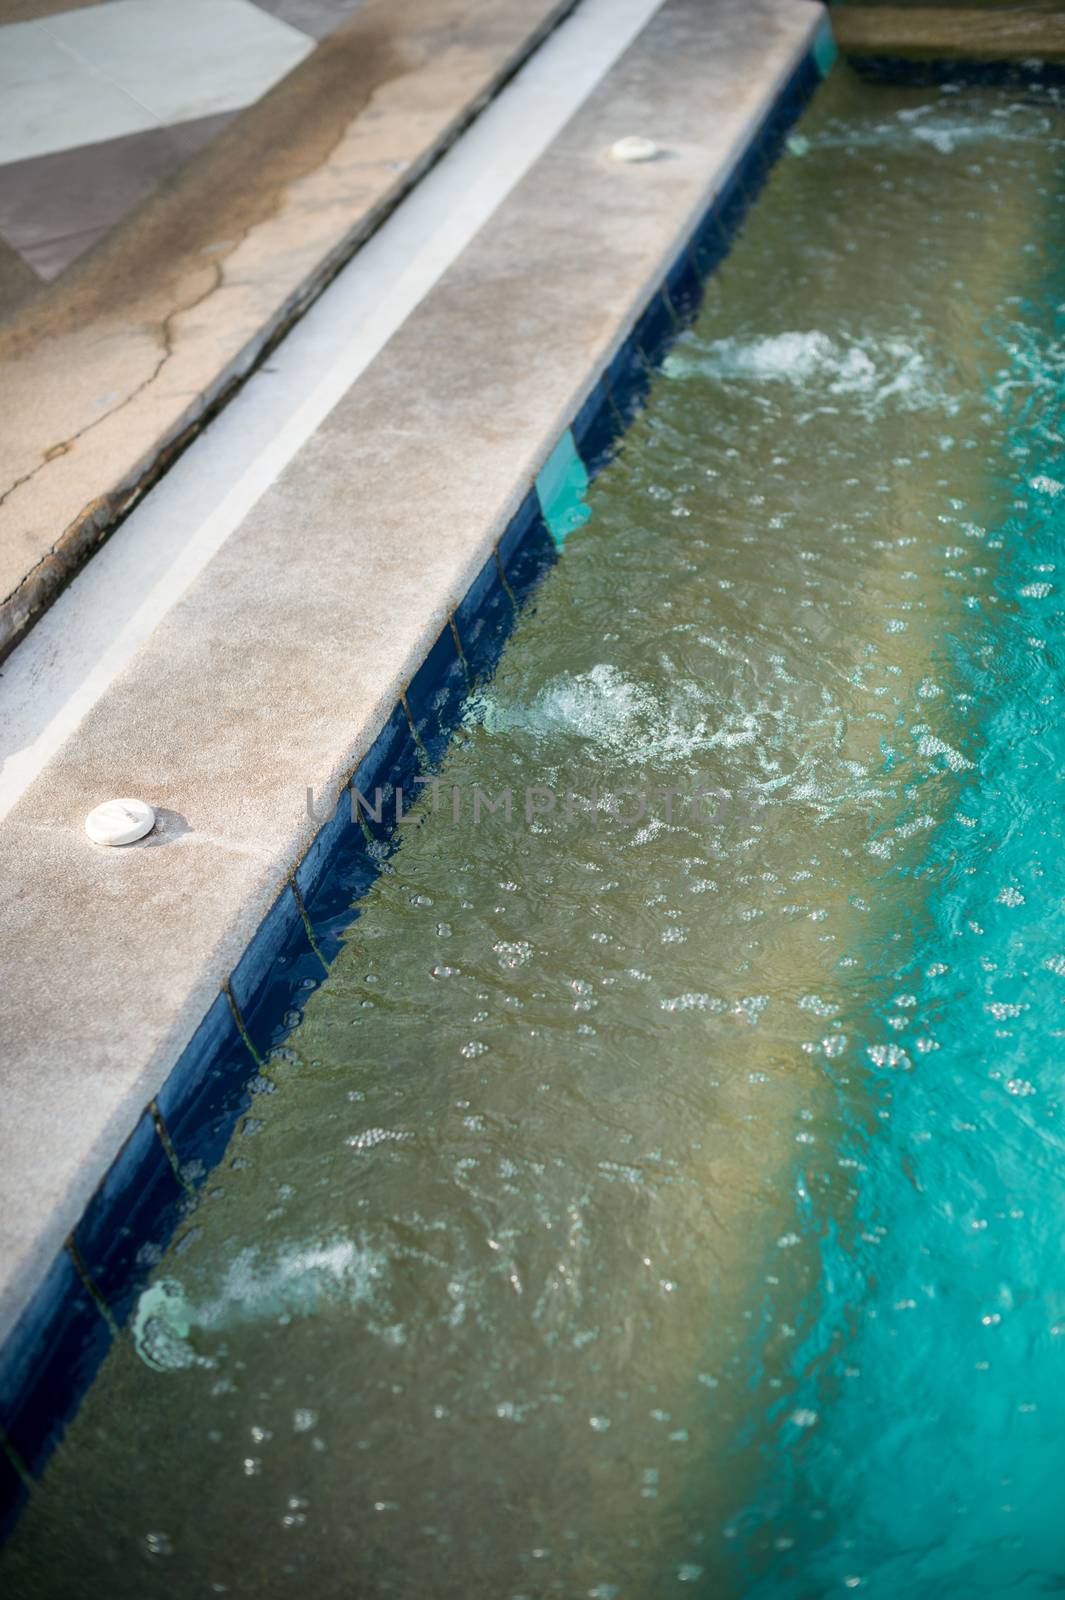 Swimming pool detail